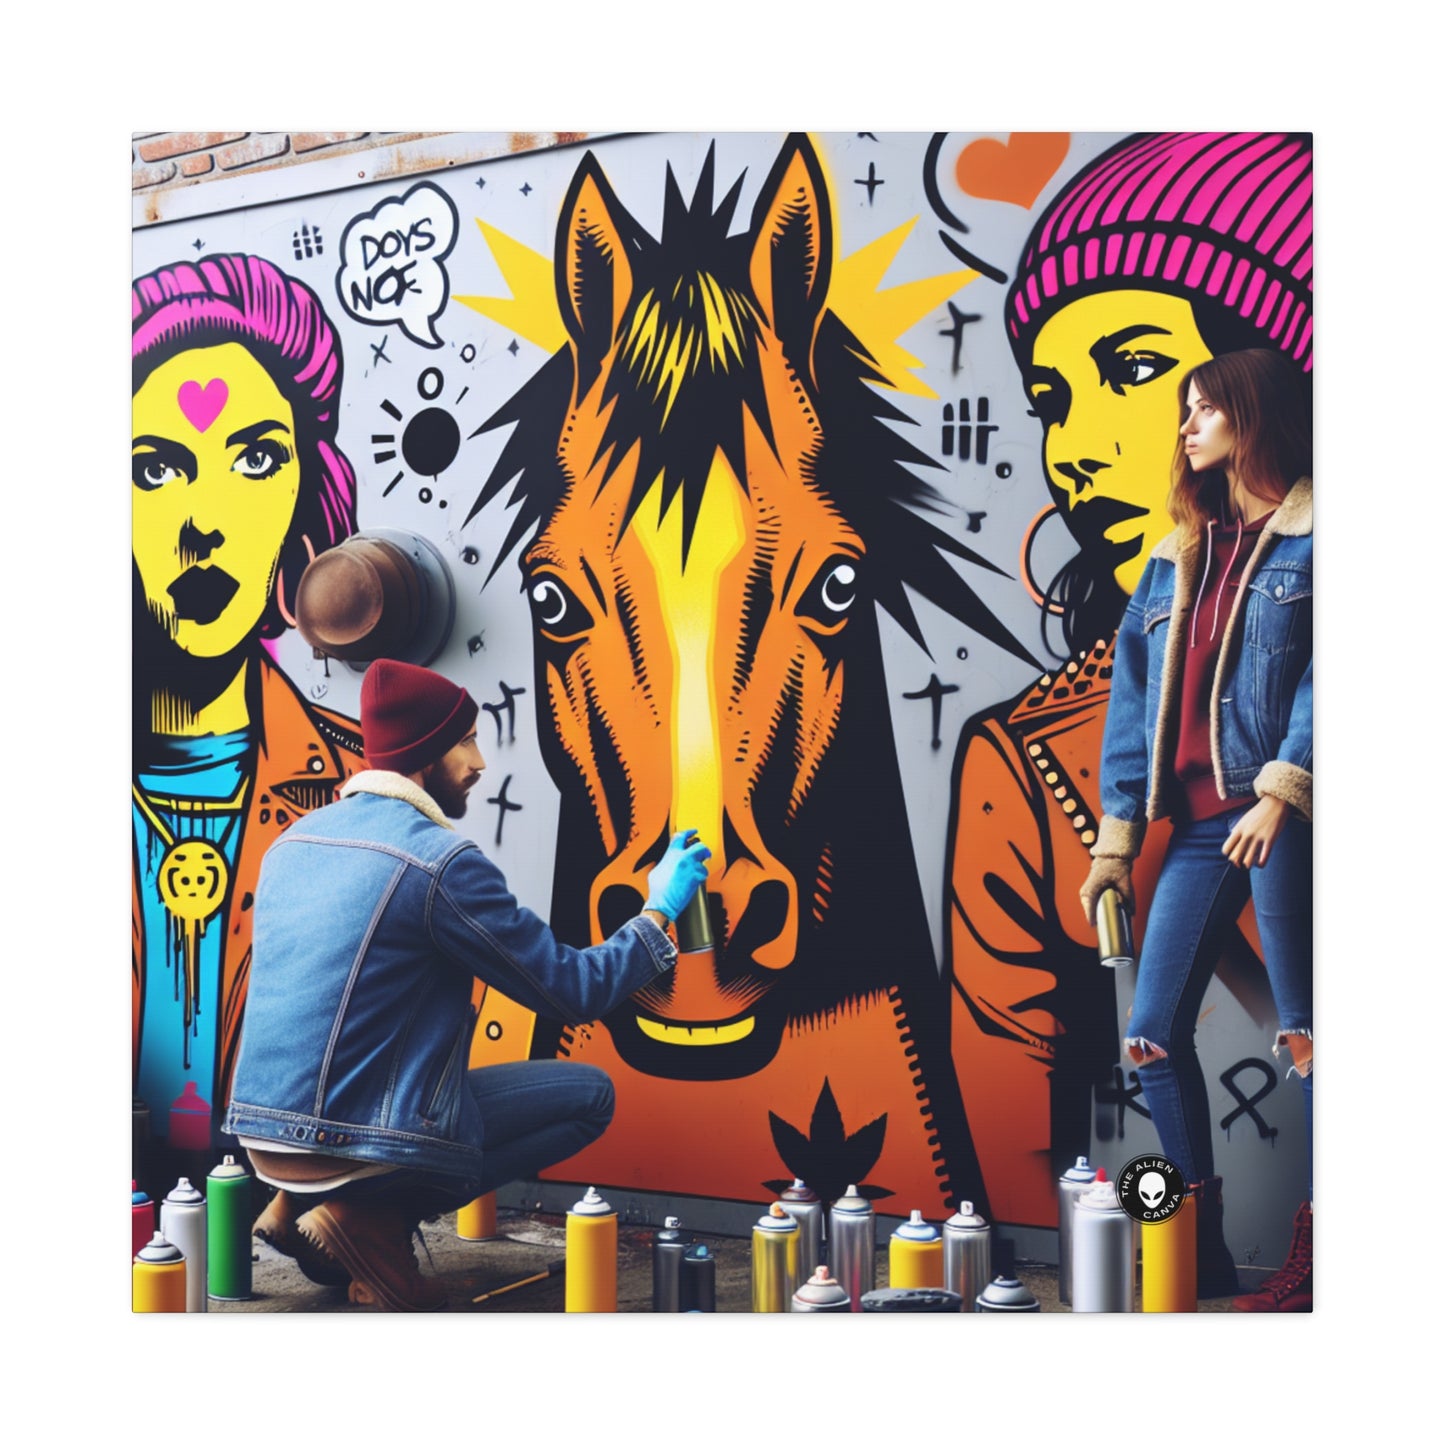 "Unidad en la diversidad: un vibrante mural de arte callejero" - The Alien Canva Street Art